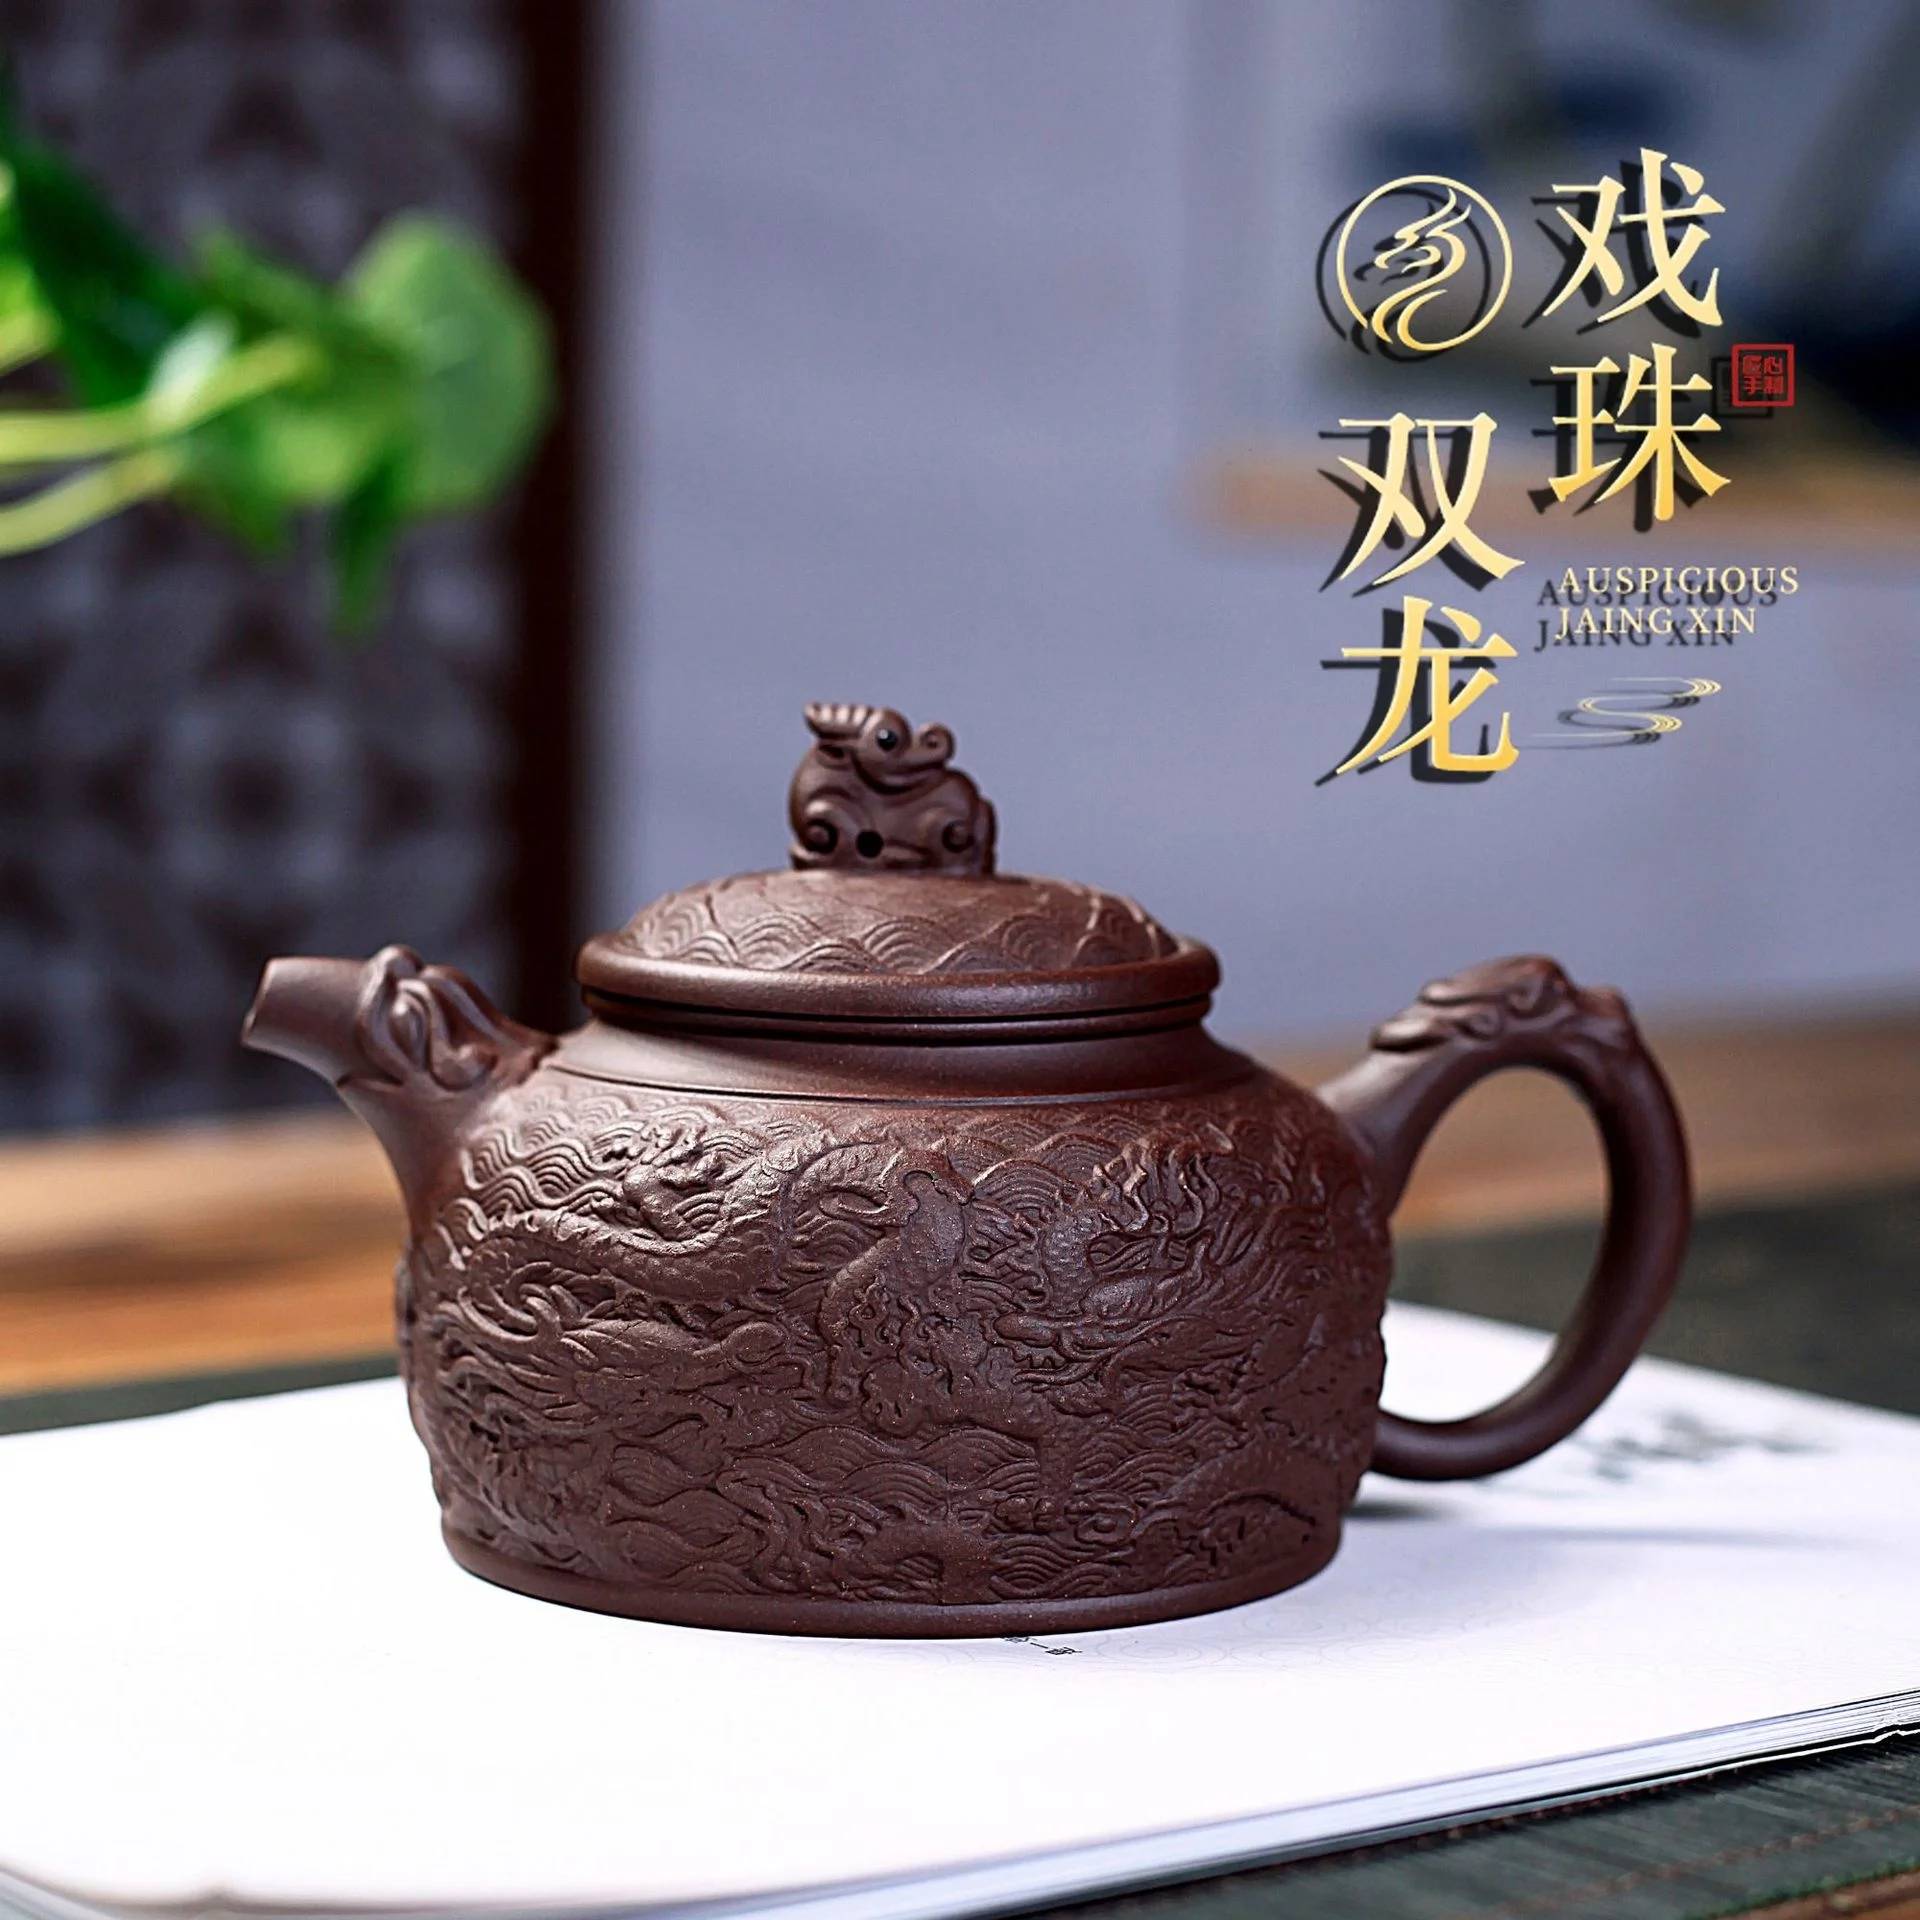 

Оригинальный чайник Yixing из фиолетовой глины, ручная работа, старая фиолетовая глина Shuanglong play Zhude bell, домашний специальный чайник